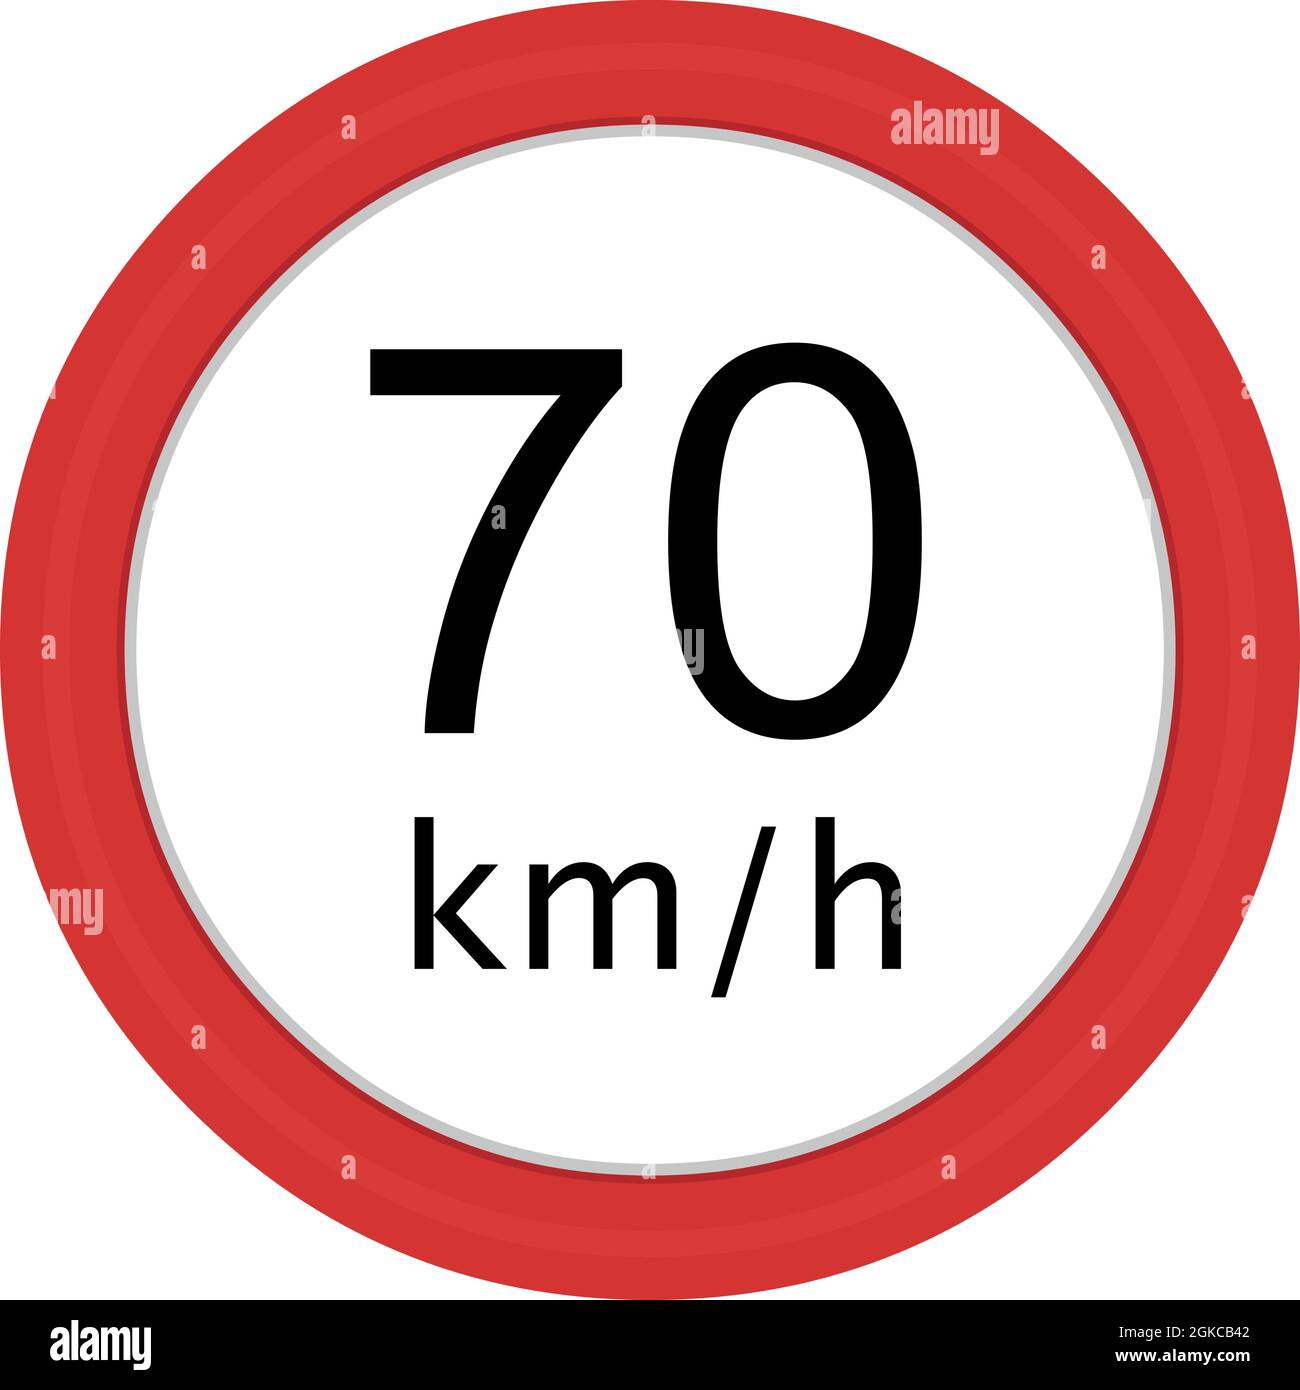 esta señalización recomienda circular a 70 kilómetros por hora